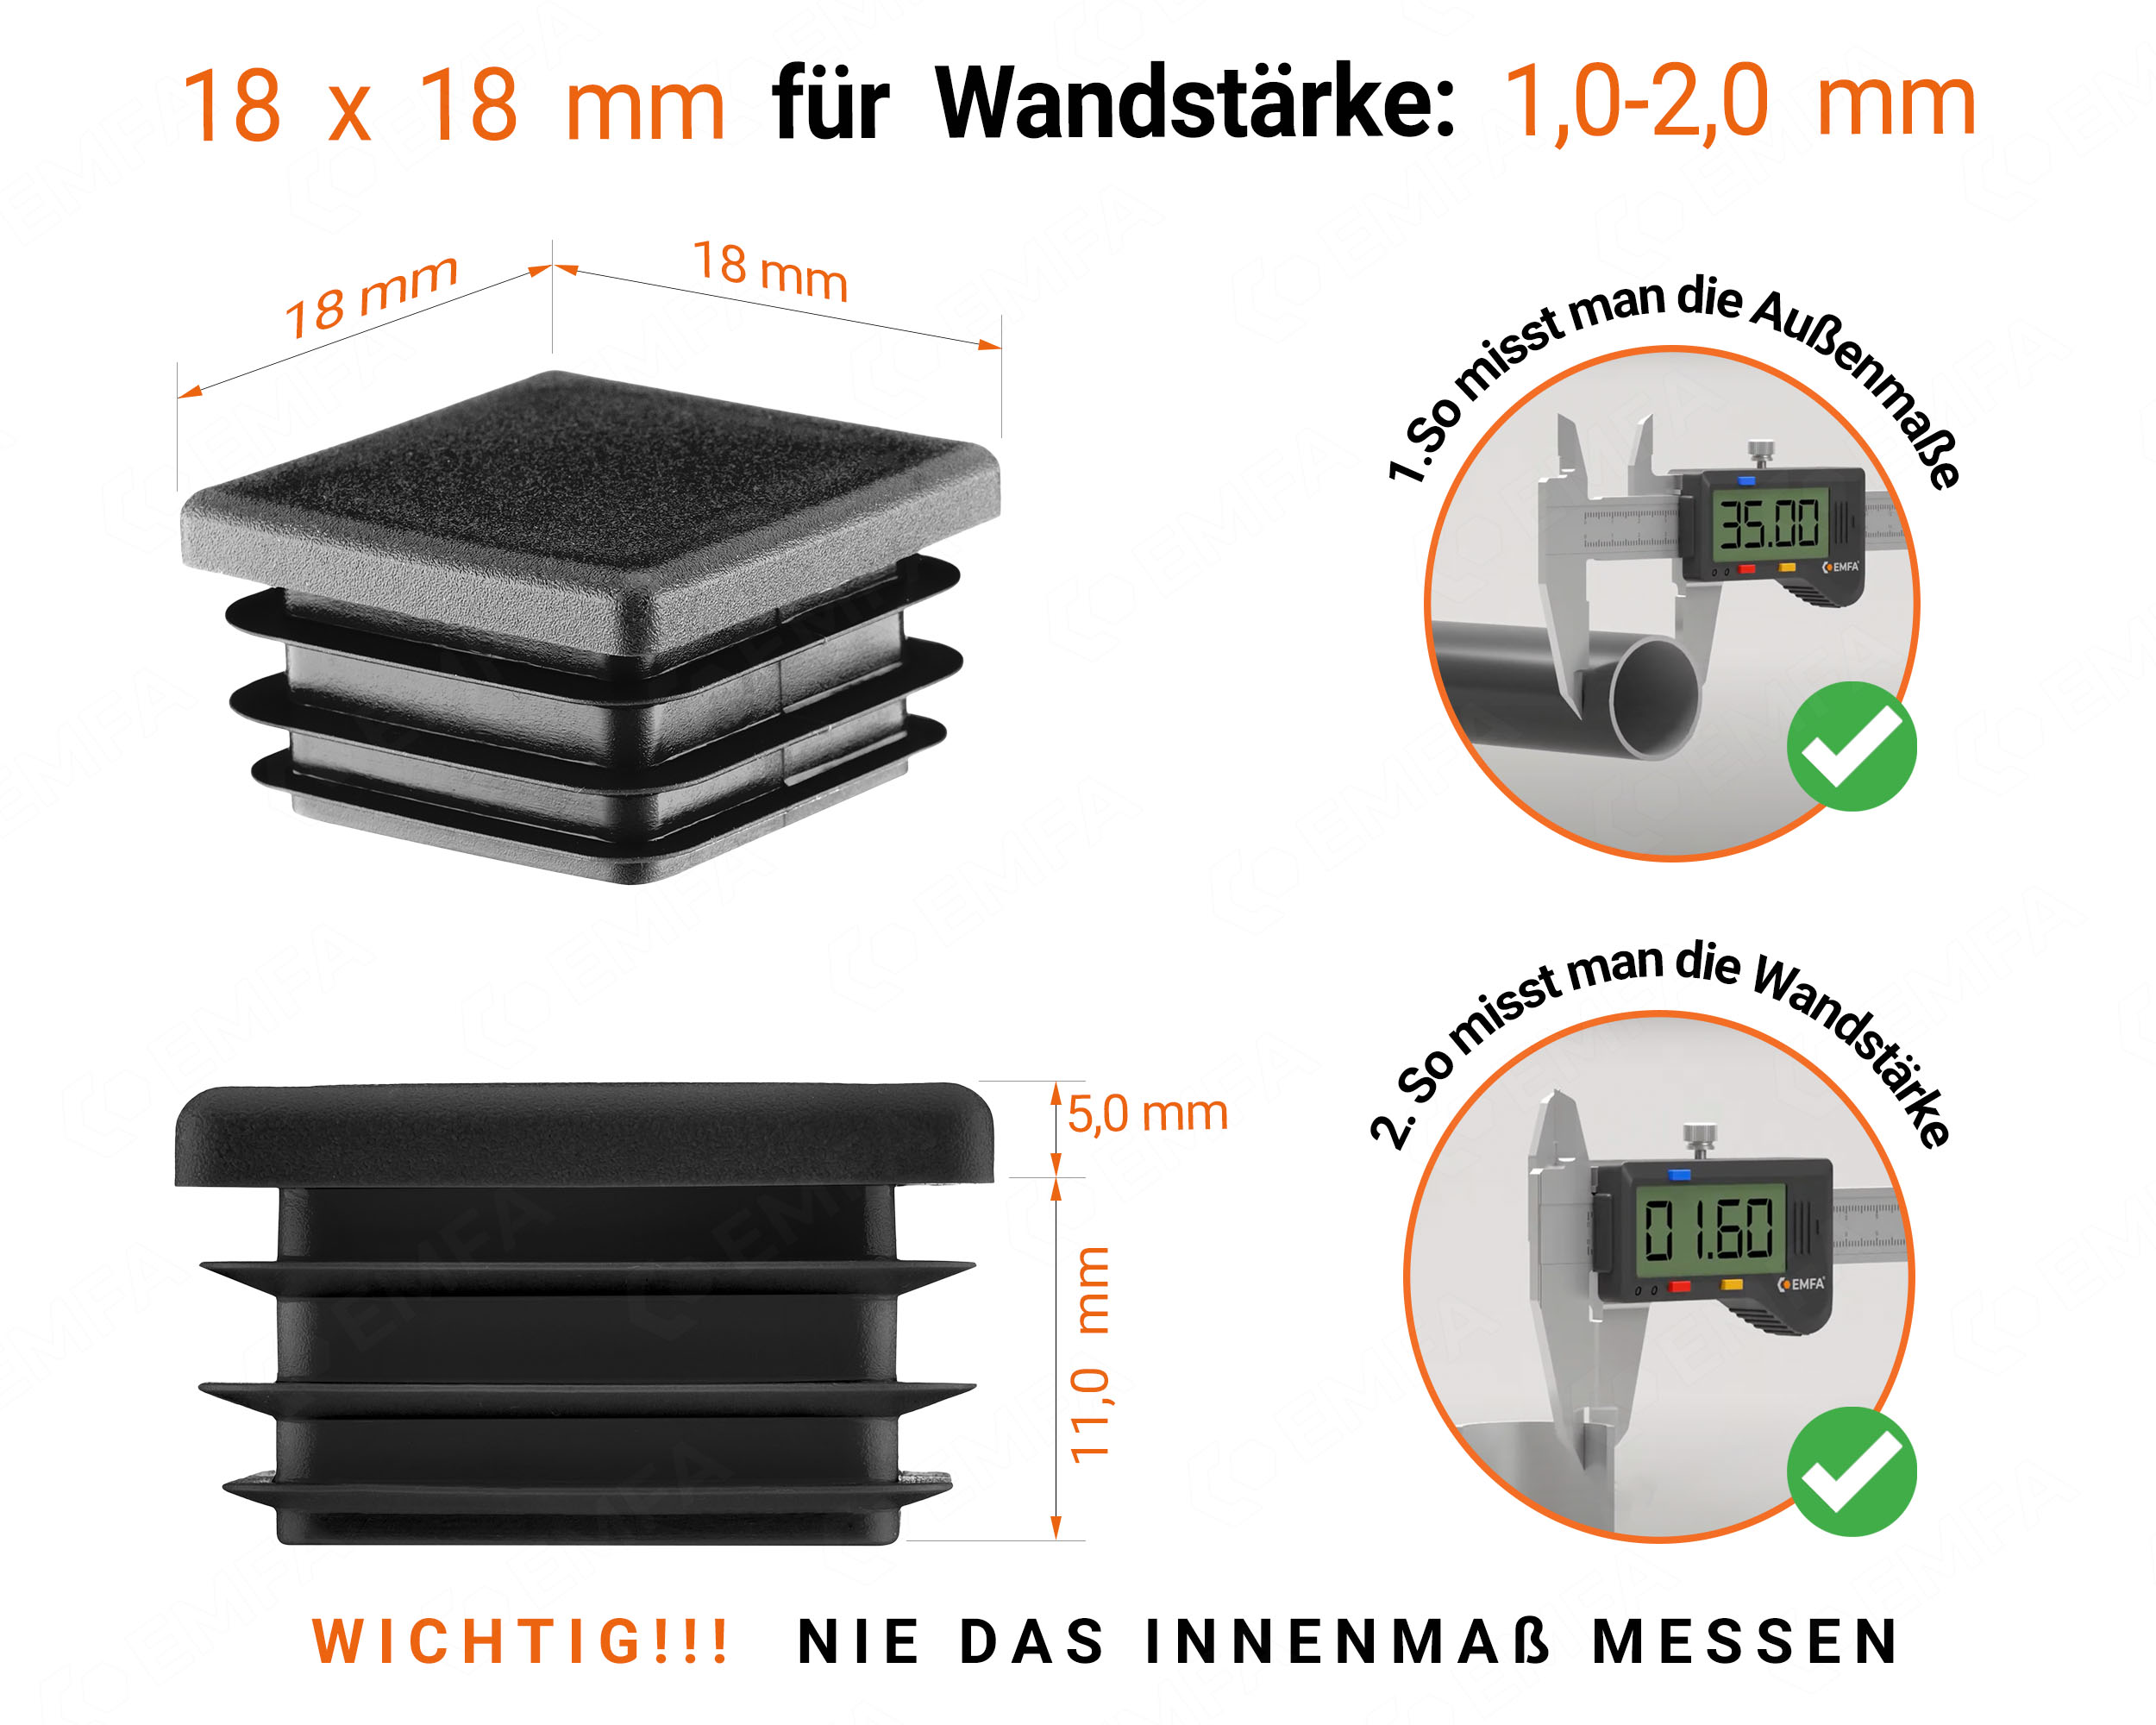 Schwarze Endkappe für Vierkantrohre in der Größe 18x18 mm mit technischen Abmessungen und Anleitung für korrekte Messung